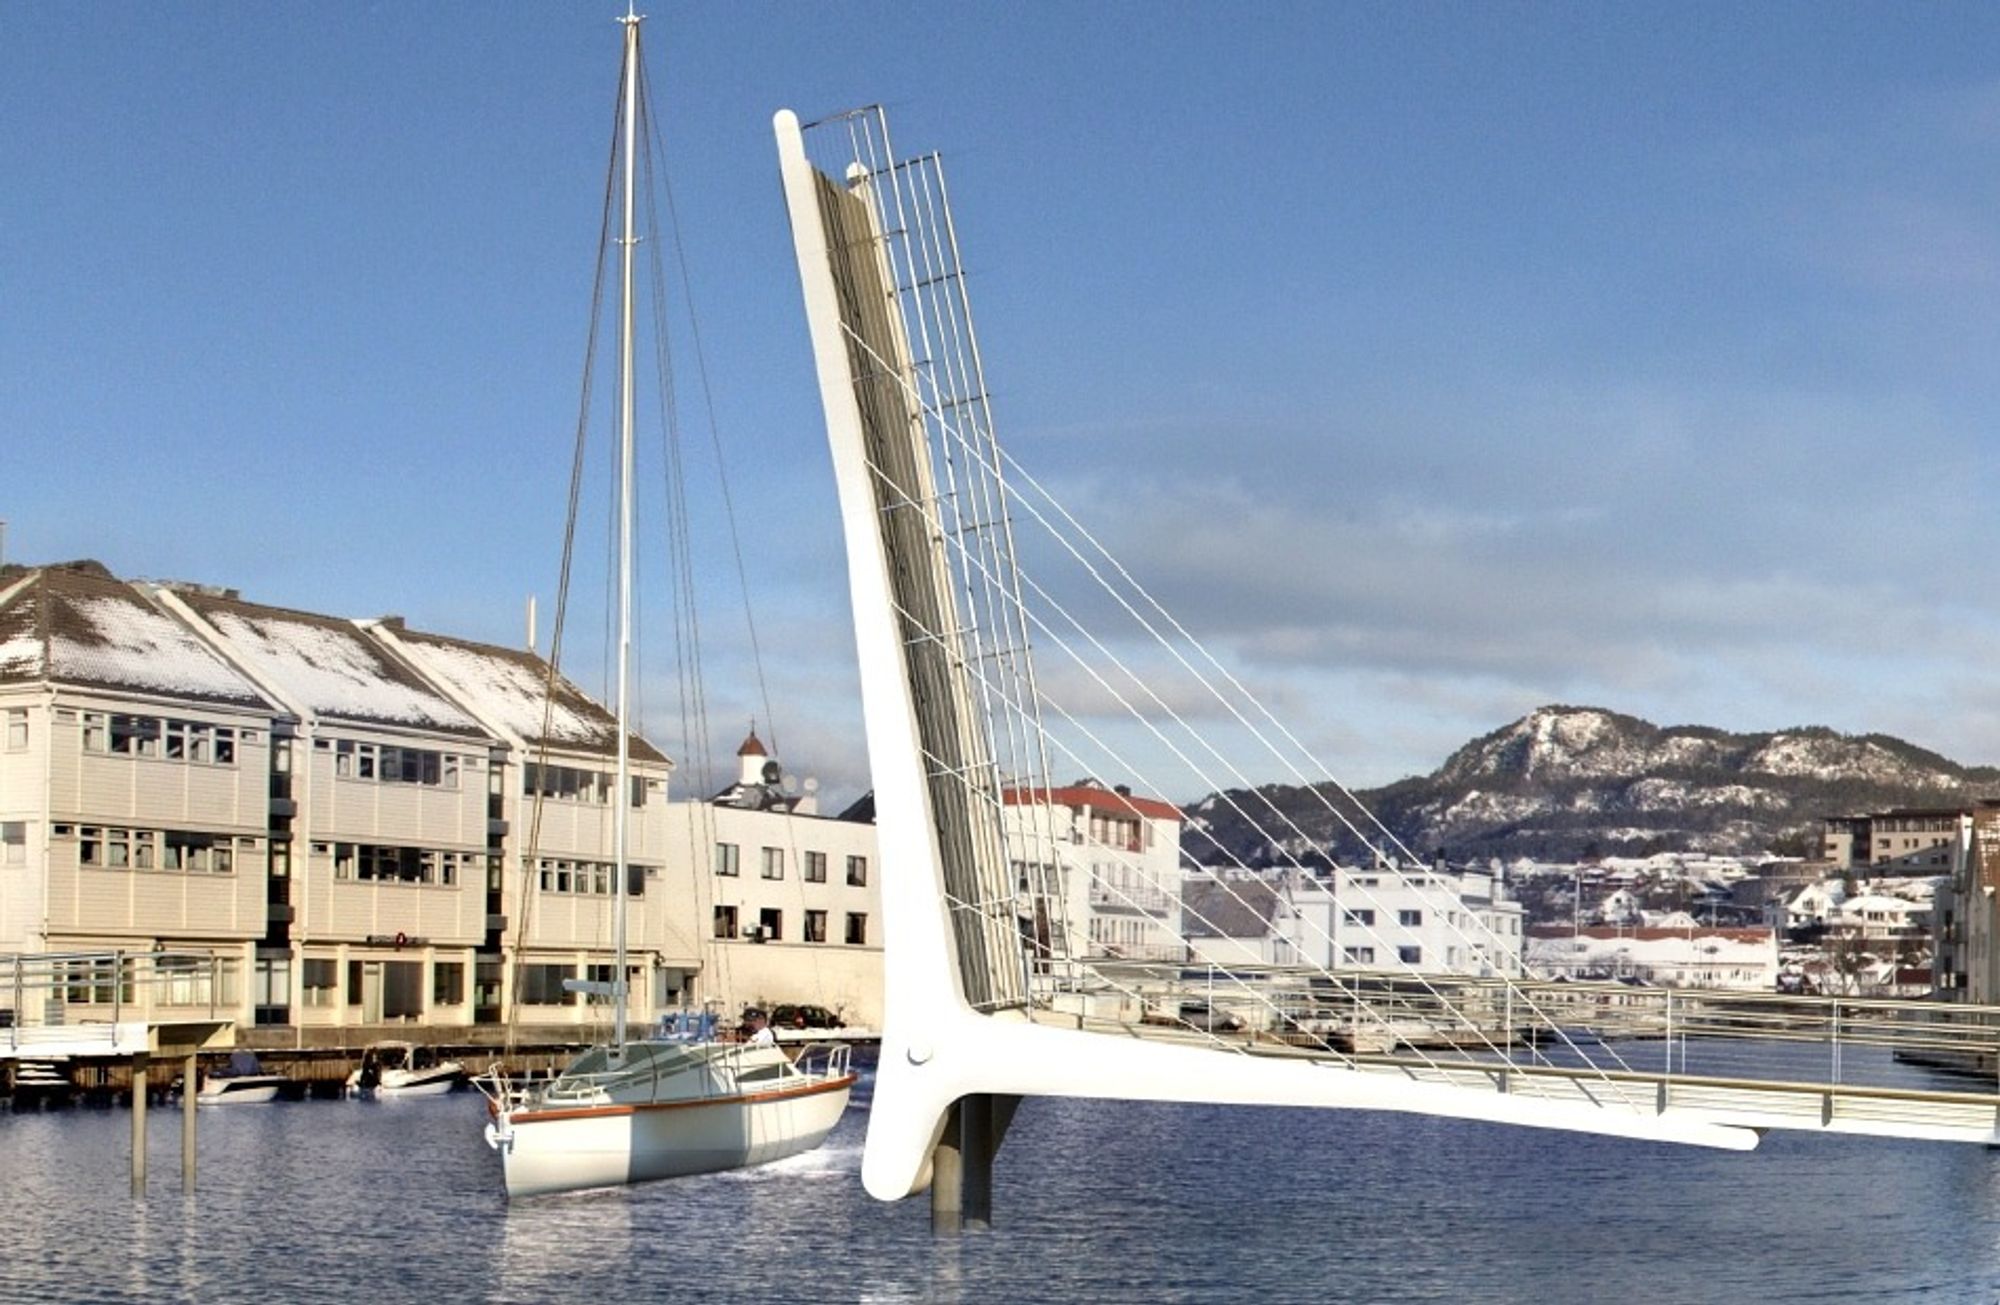 Dette synet blir ikke så vanlig i Flekkefjord. De fleste båter som går opp Elva, kan gå under brua selv om klaffen ligger nede. Ill.: NUNO arkitektur